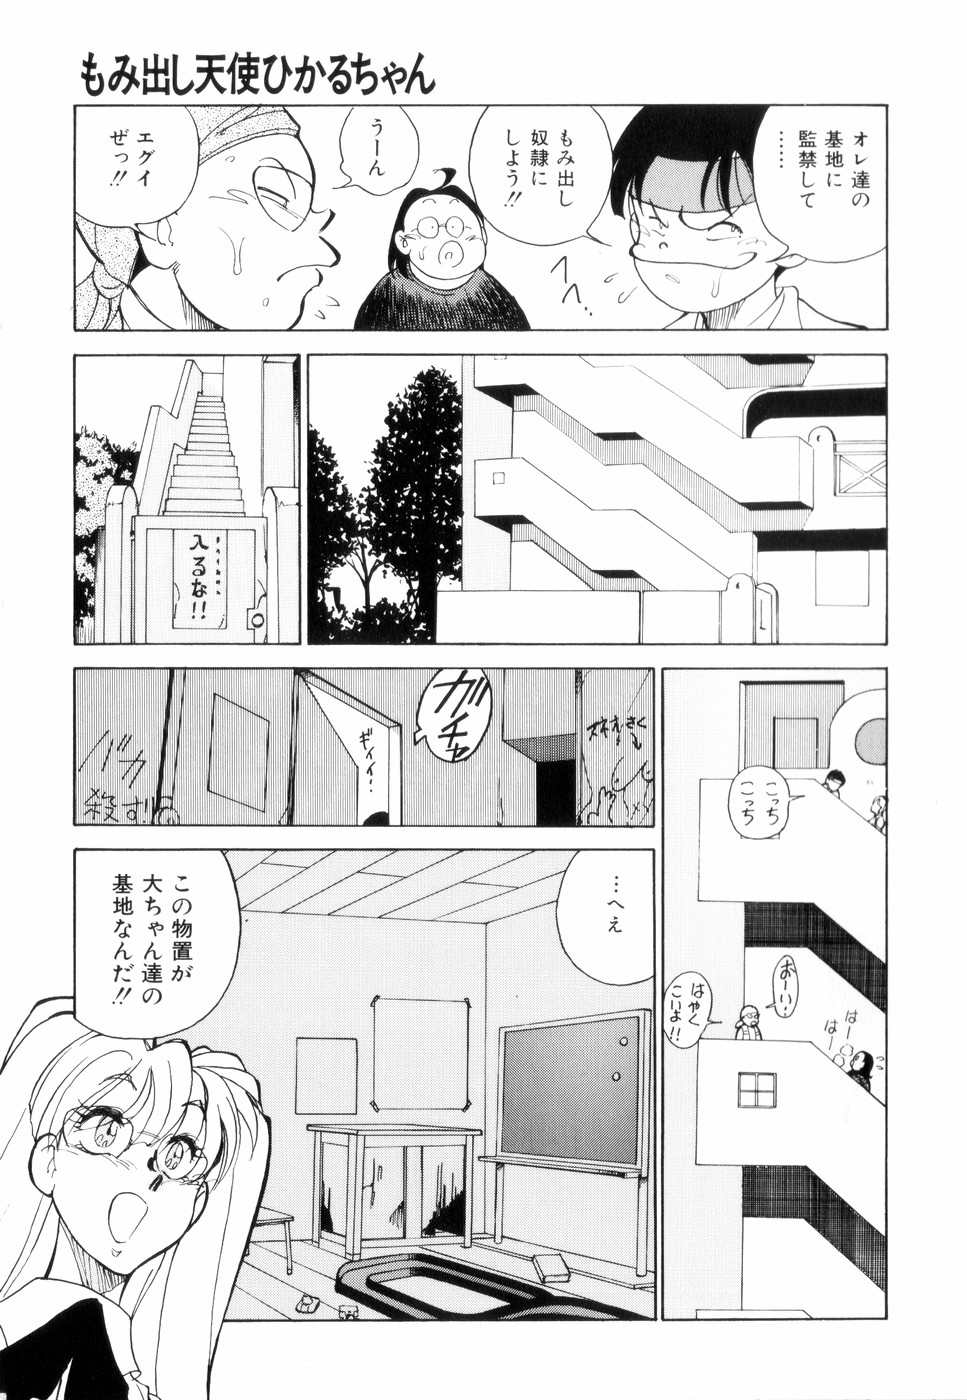 [1ROO] Hakujuu no Hasha page 9 full